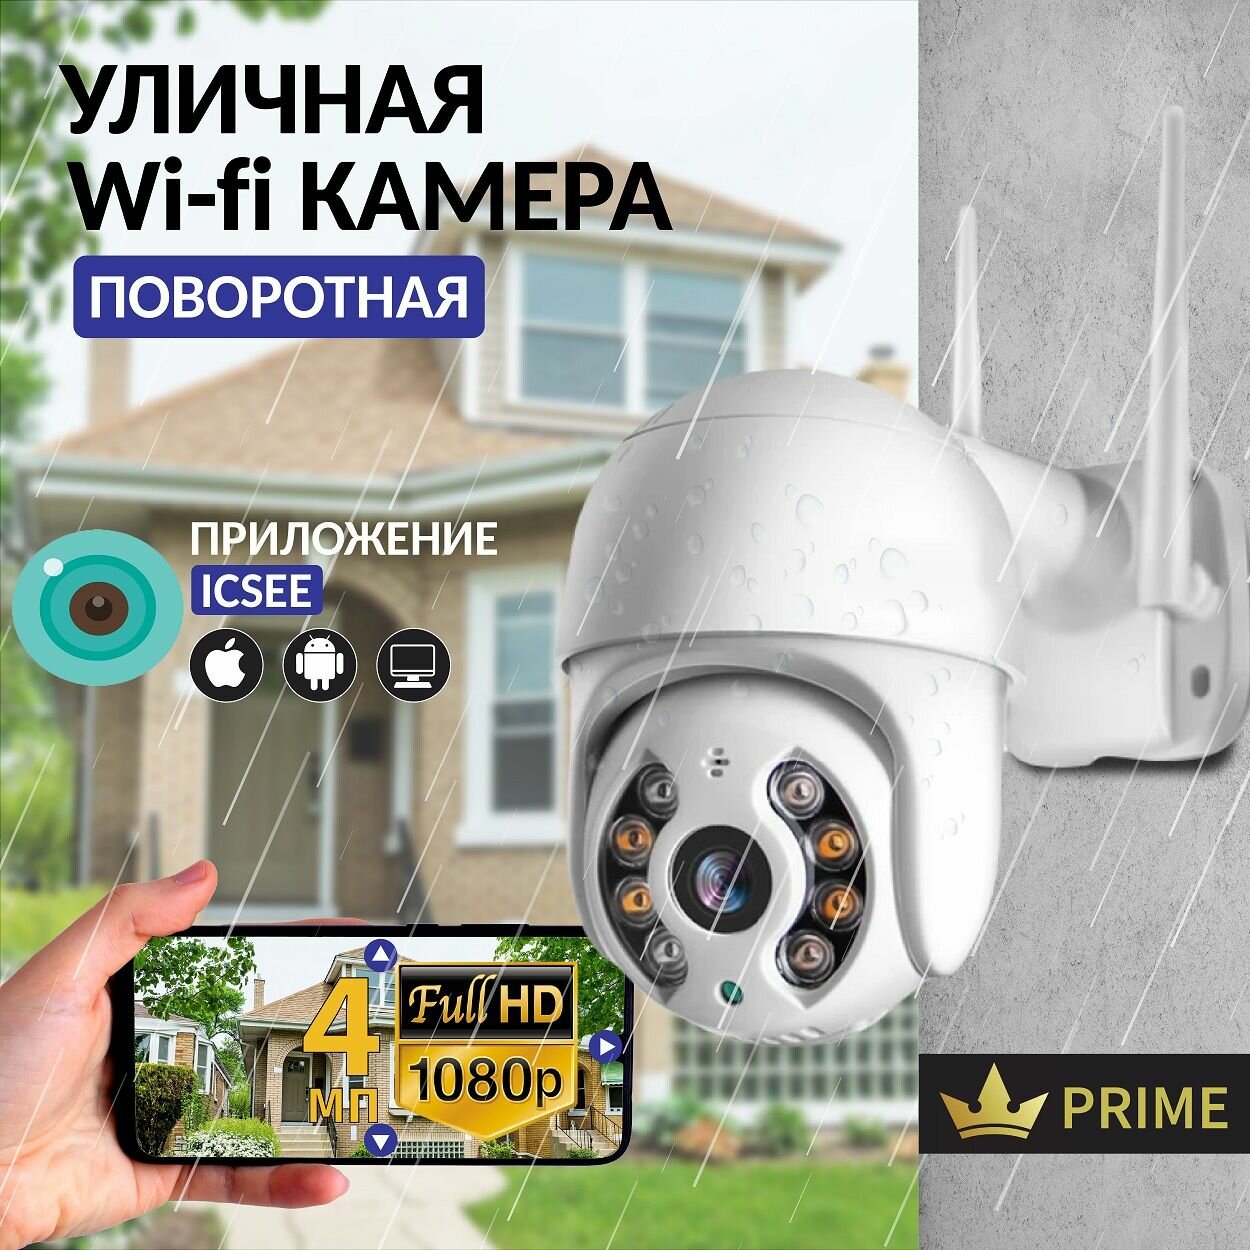 Камера видеонаблюдения Wifi уличная поворотная 4 Мп, IP видеокамера для дома и дачи.